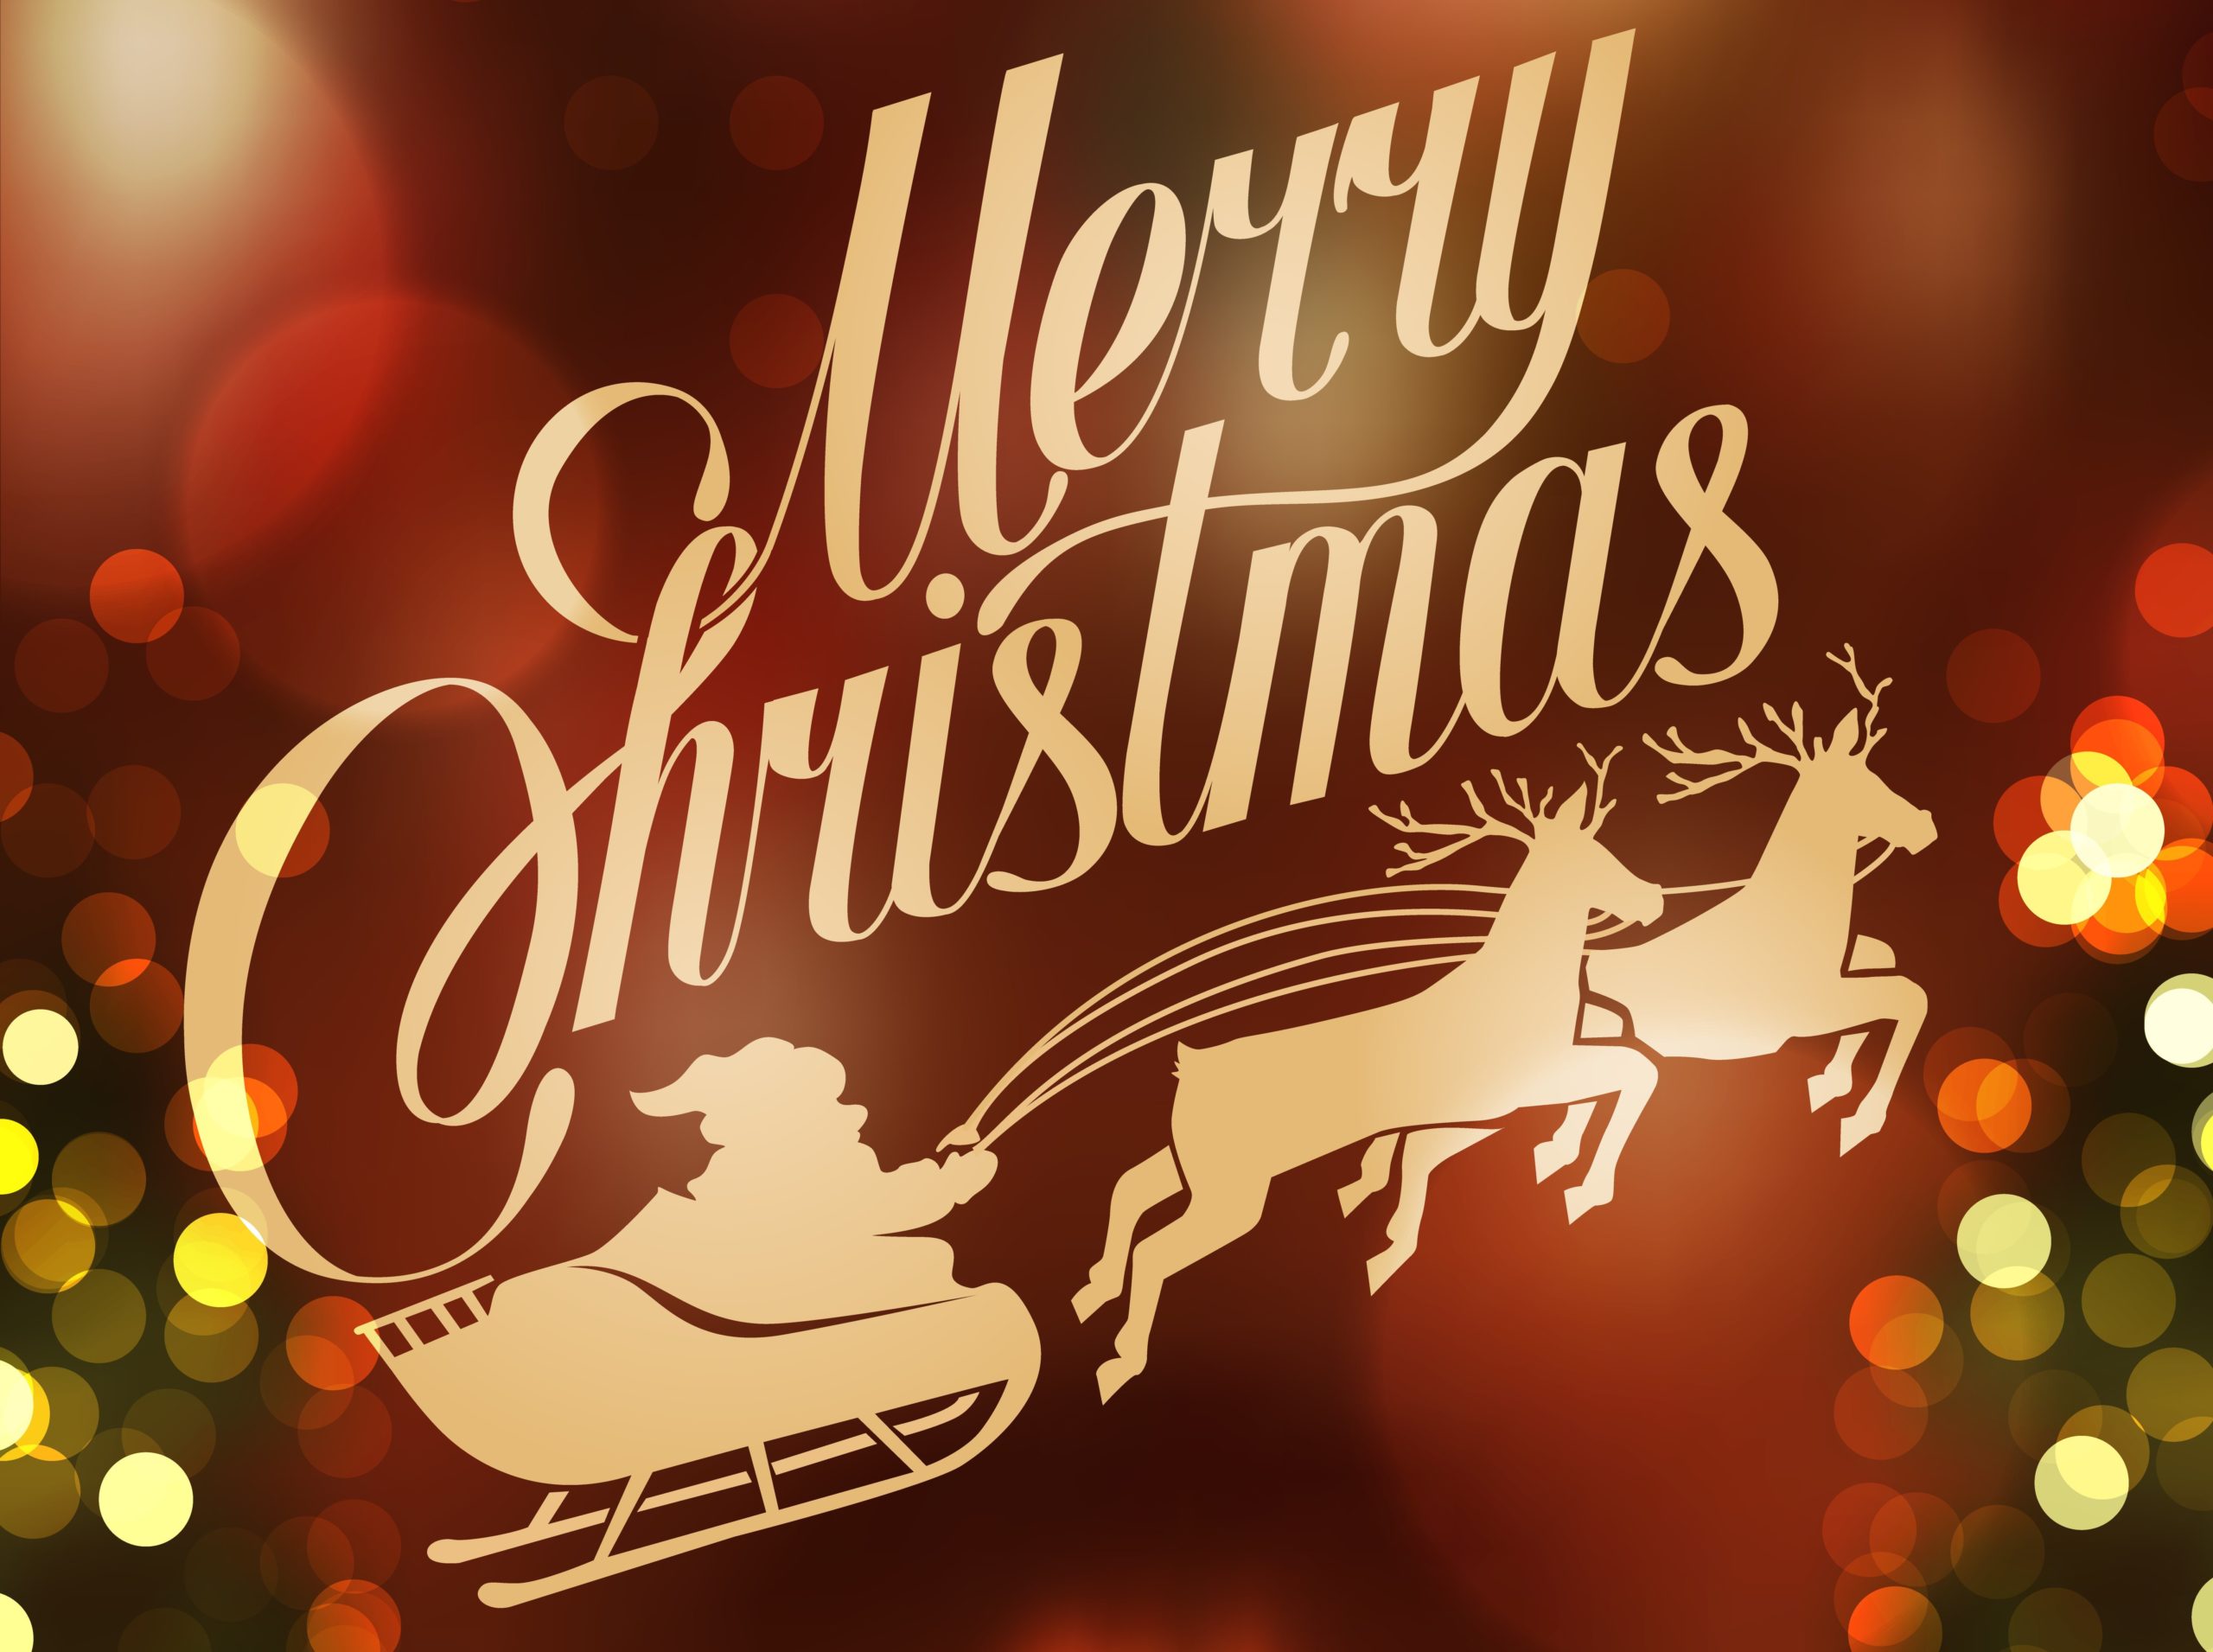 We Wish You A Merry Christmas With Lyrics | Christmas